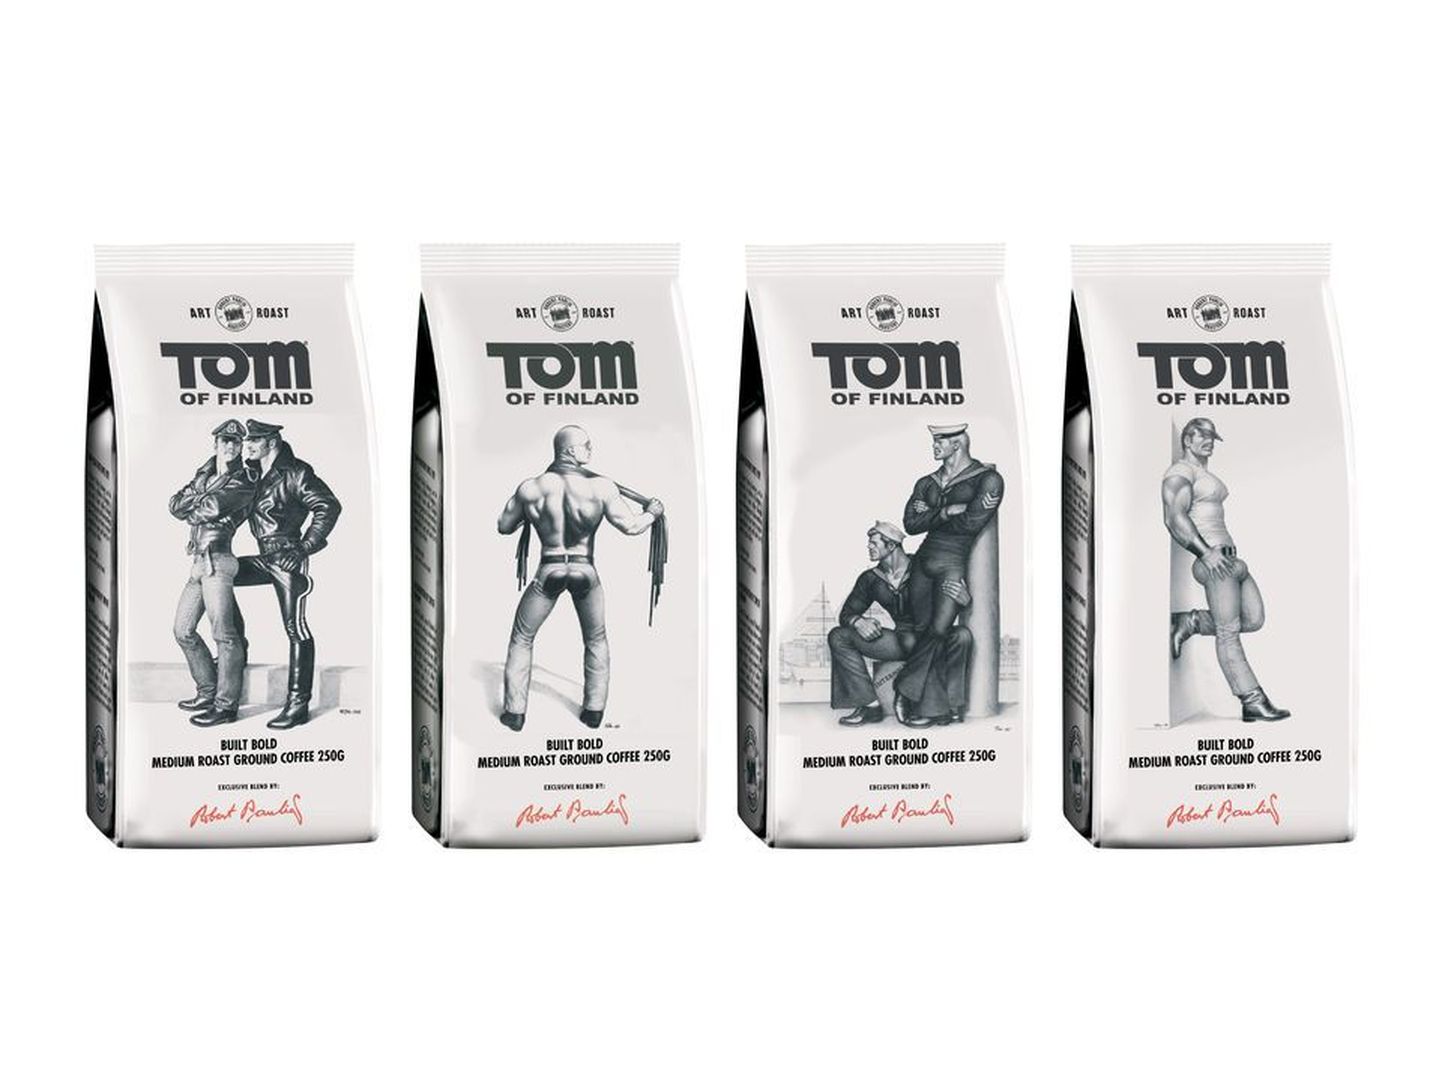 Tom of Finlandi joonistustega kohvipakid.